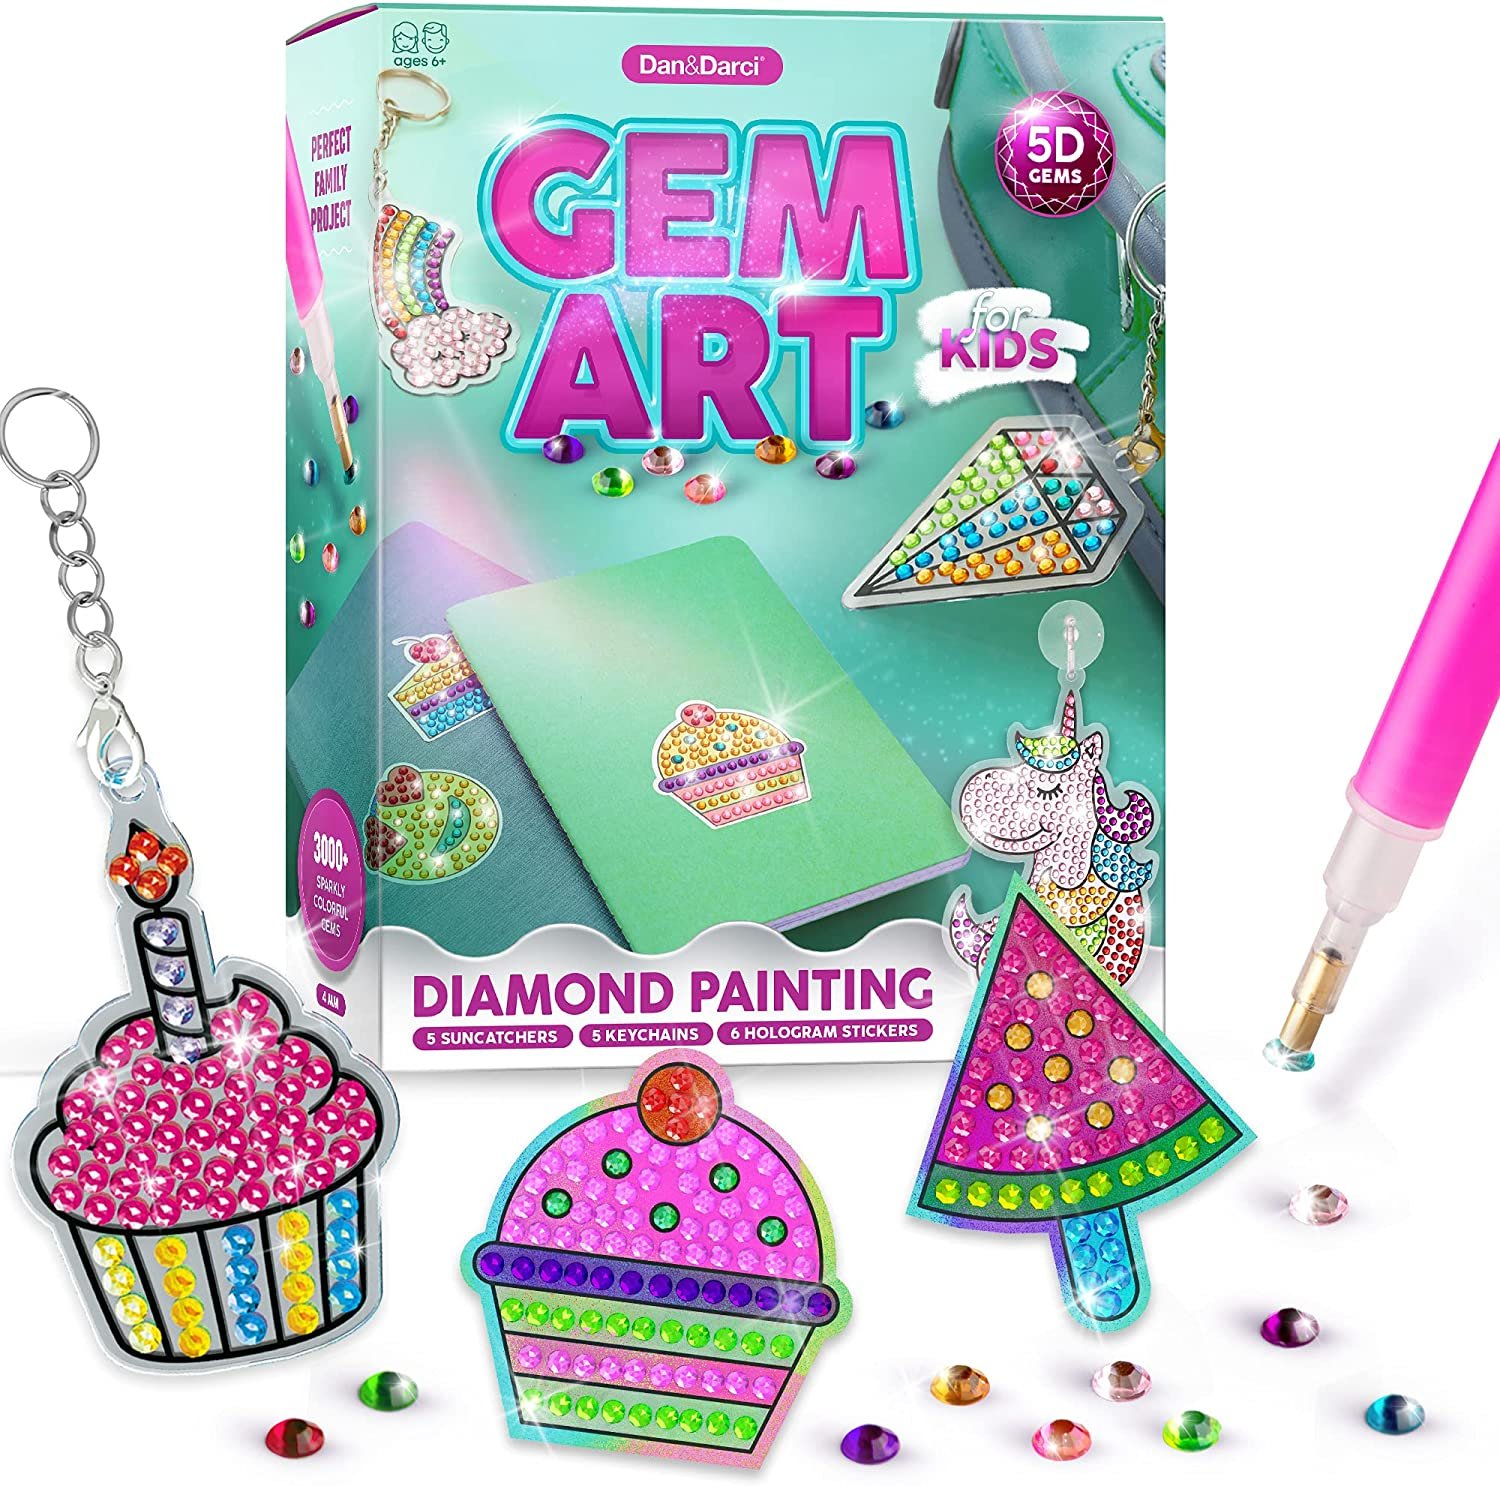 Kids Big Gem Diamond Painting Kit Create 12 Stickers Diy Arts